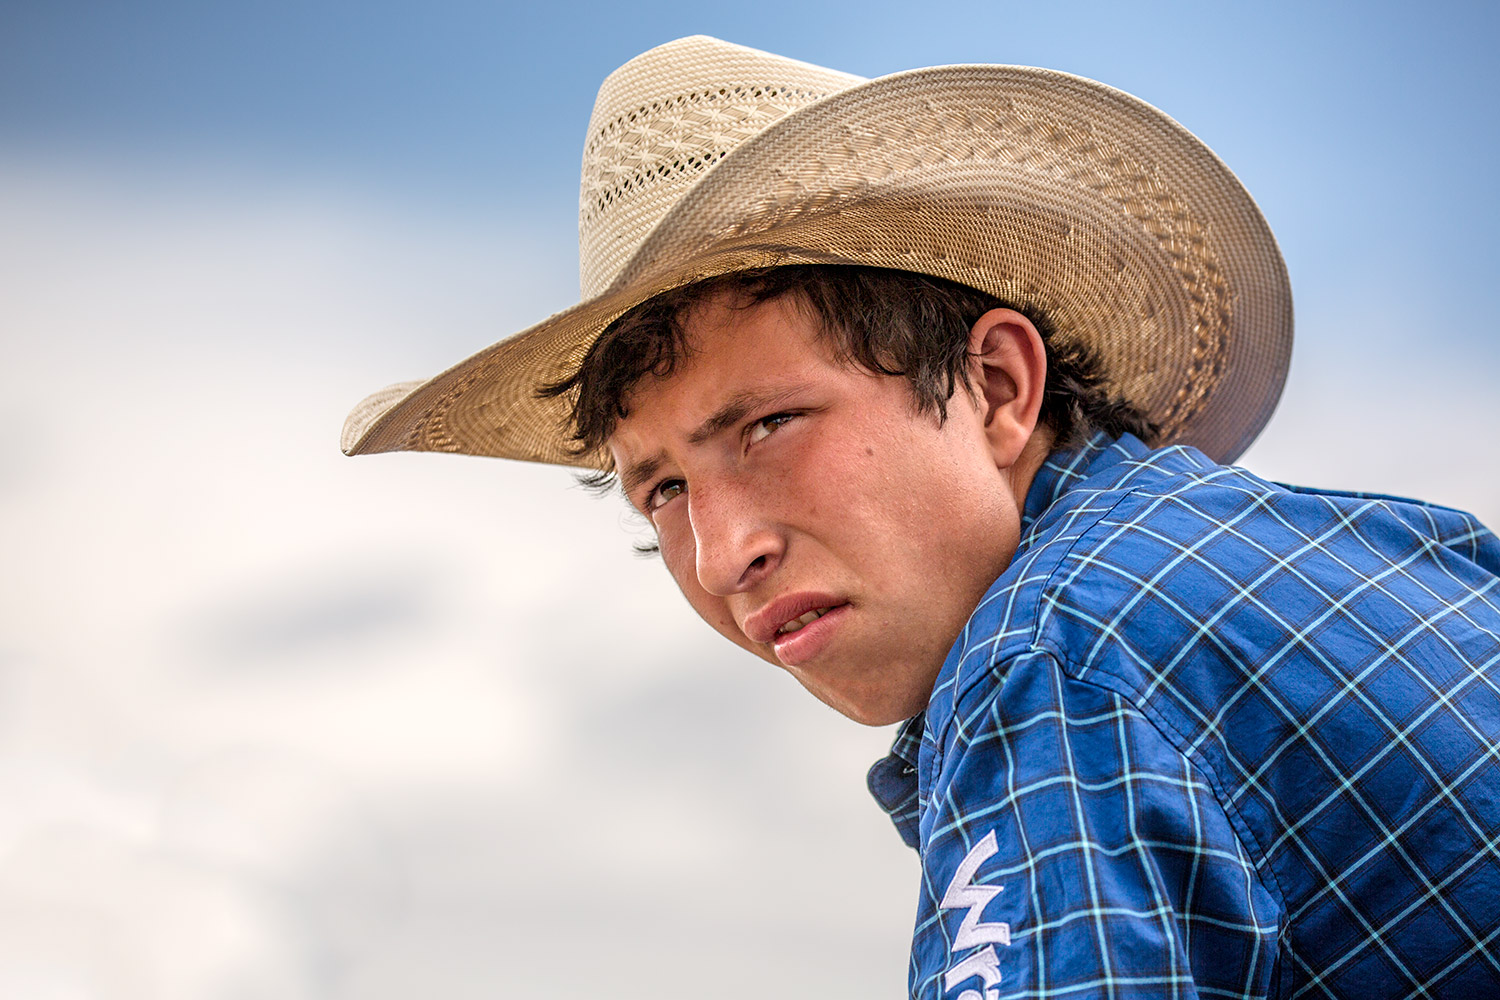 Rodeo Portrait